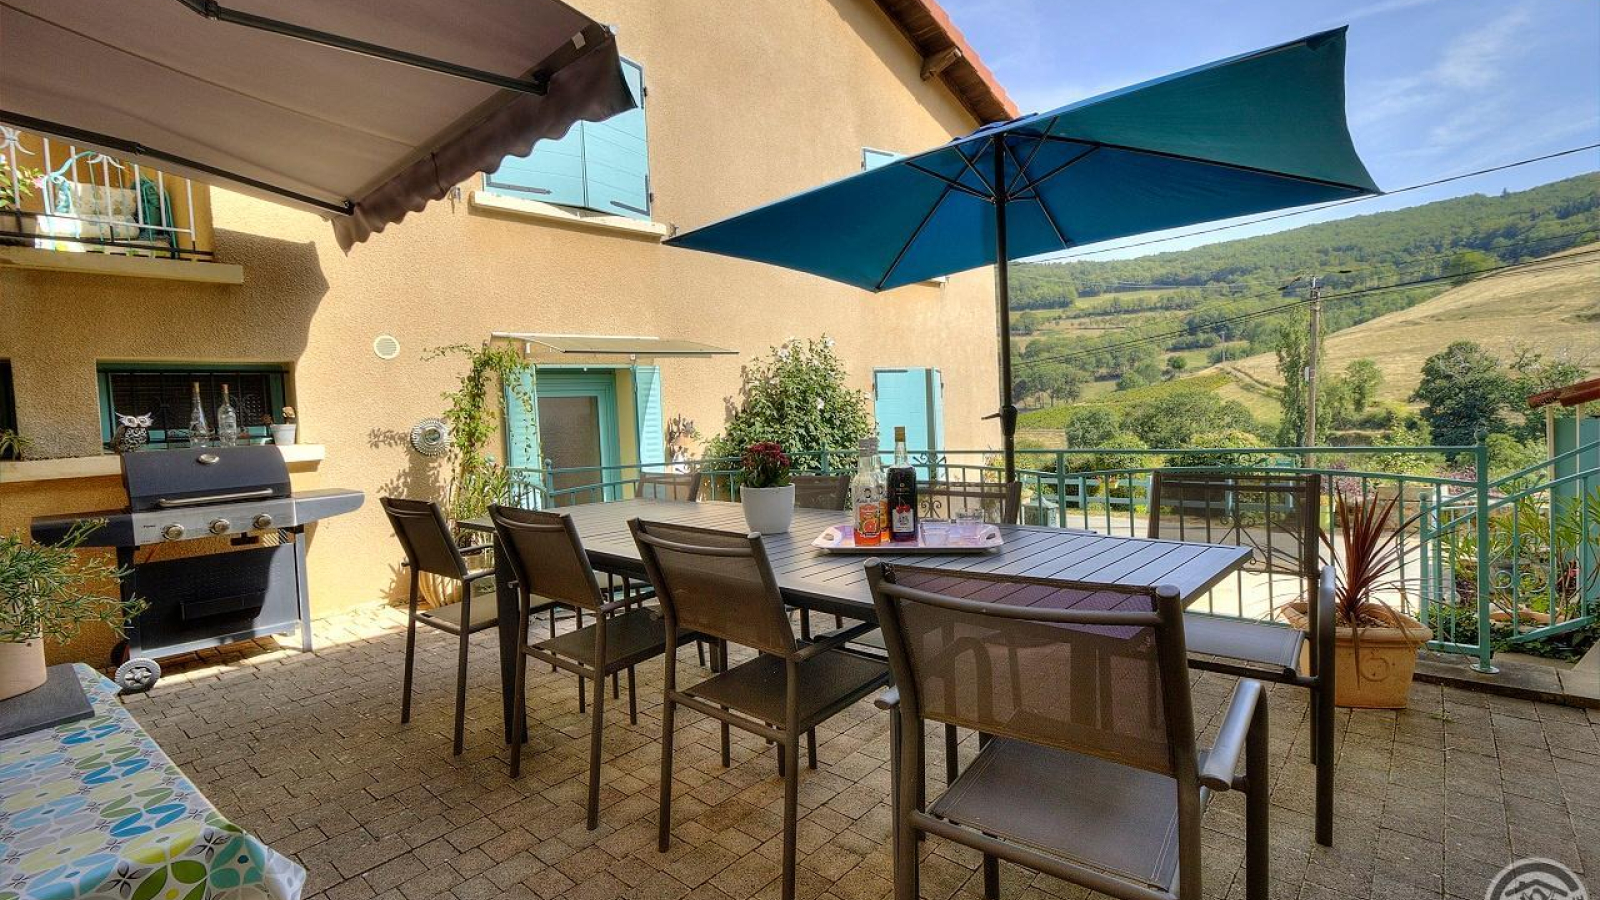 Chambres d'hôtes chez le vigneron 'Le Relais du Colombier' à Marchampt dans le Beaujolais - Rhône : la terrasse.